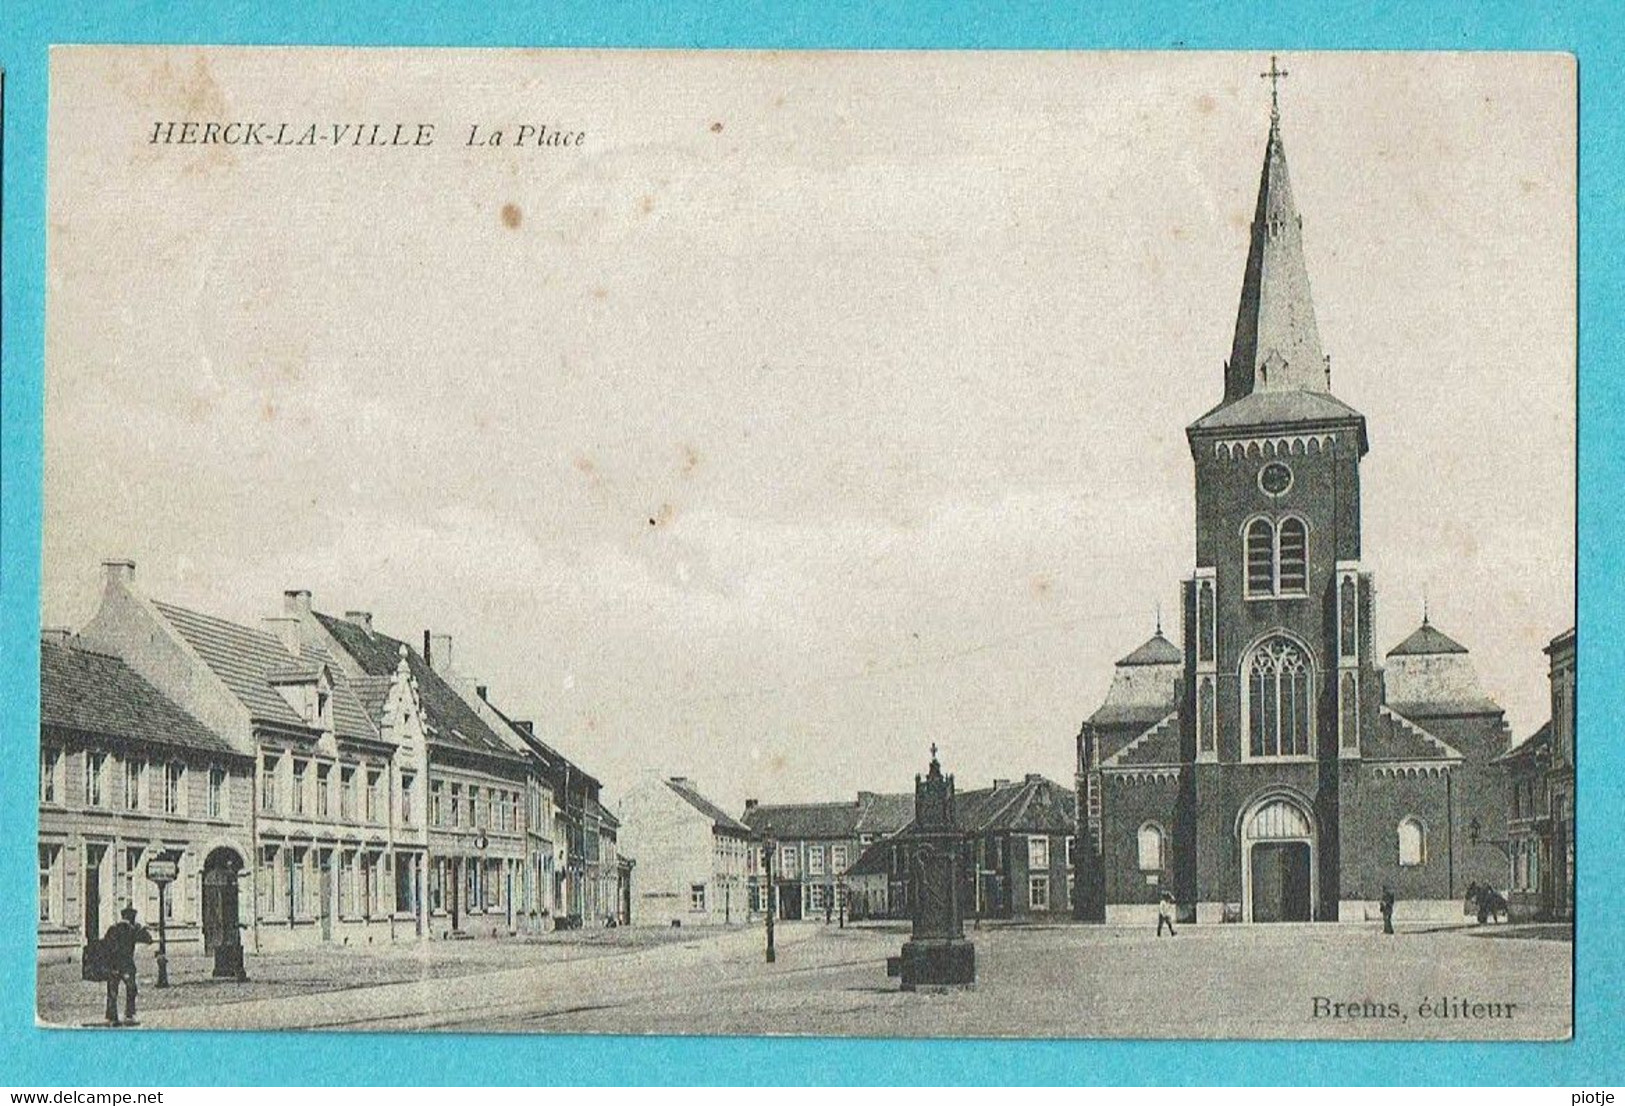 * Herk De Stad - Herck La Ville (Limburg) * (Brems, éditeur) La Place, Grand Place, Markt, église, Kerk, Animée, Old - Herk-de-Stad